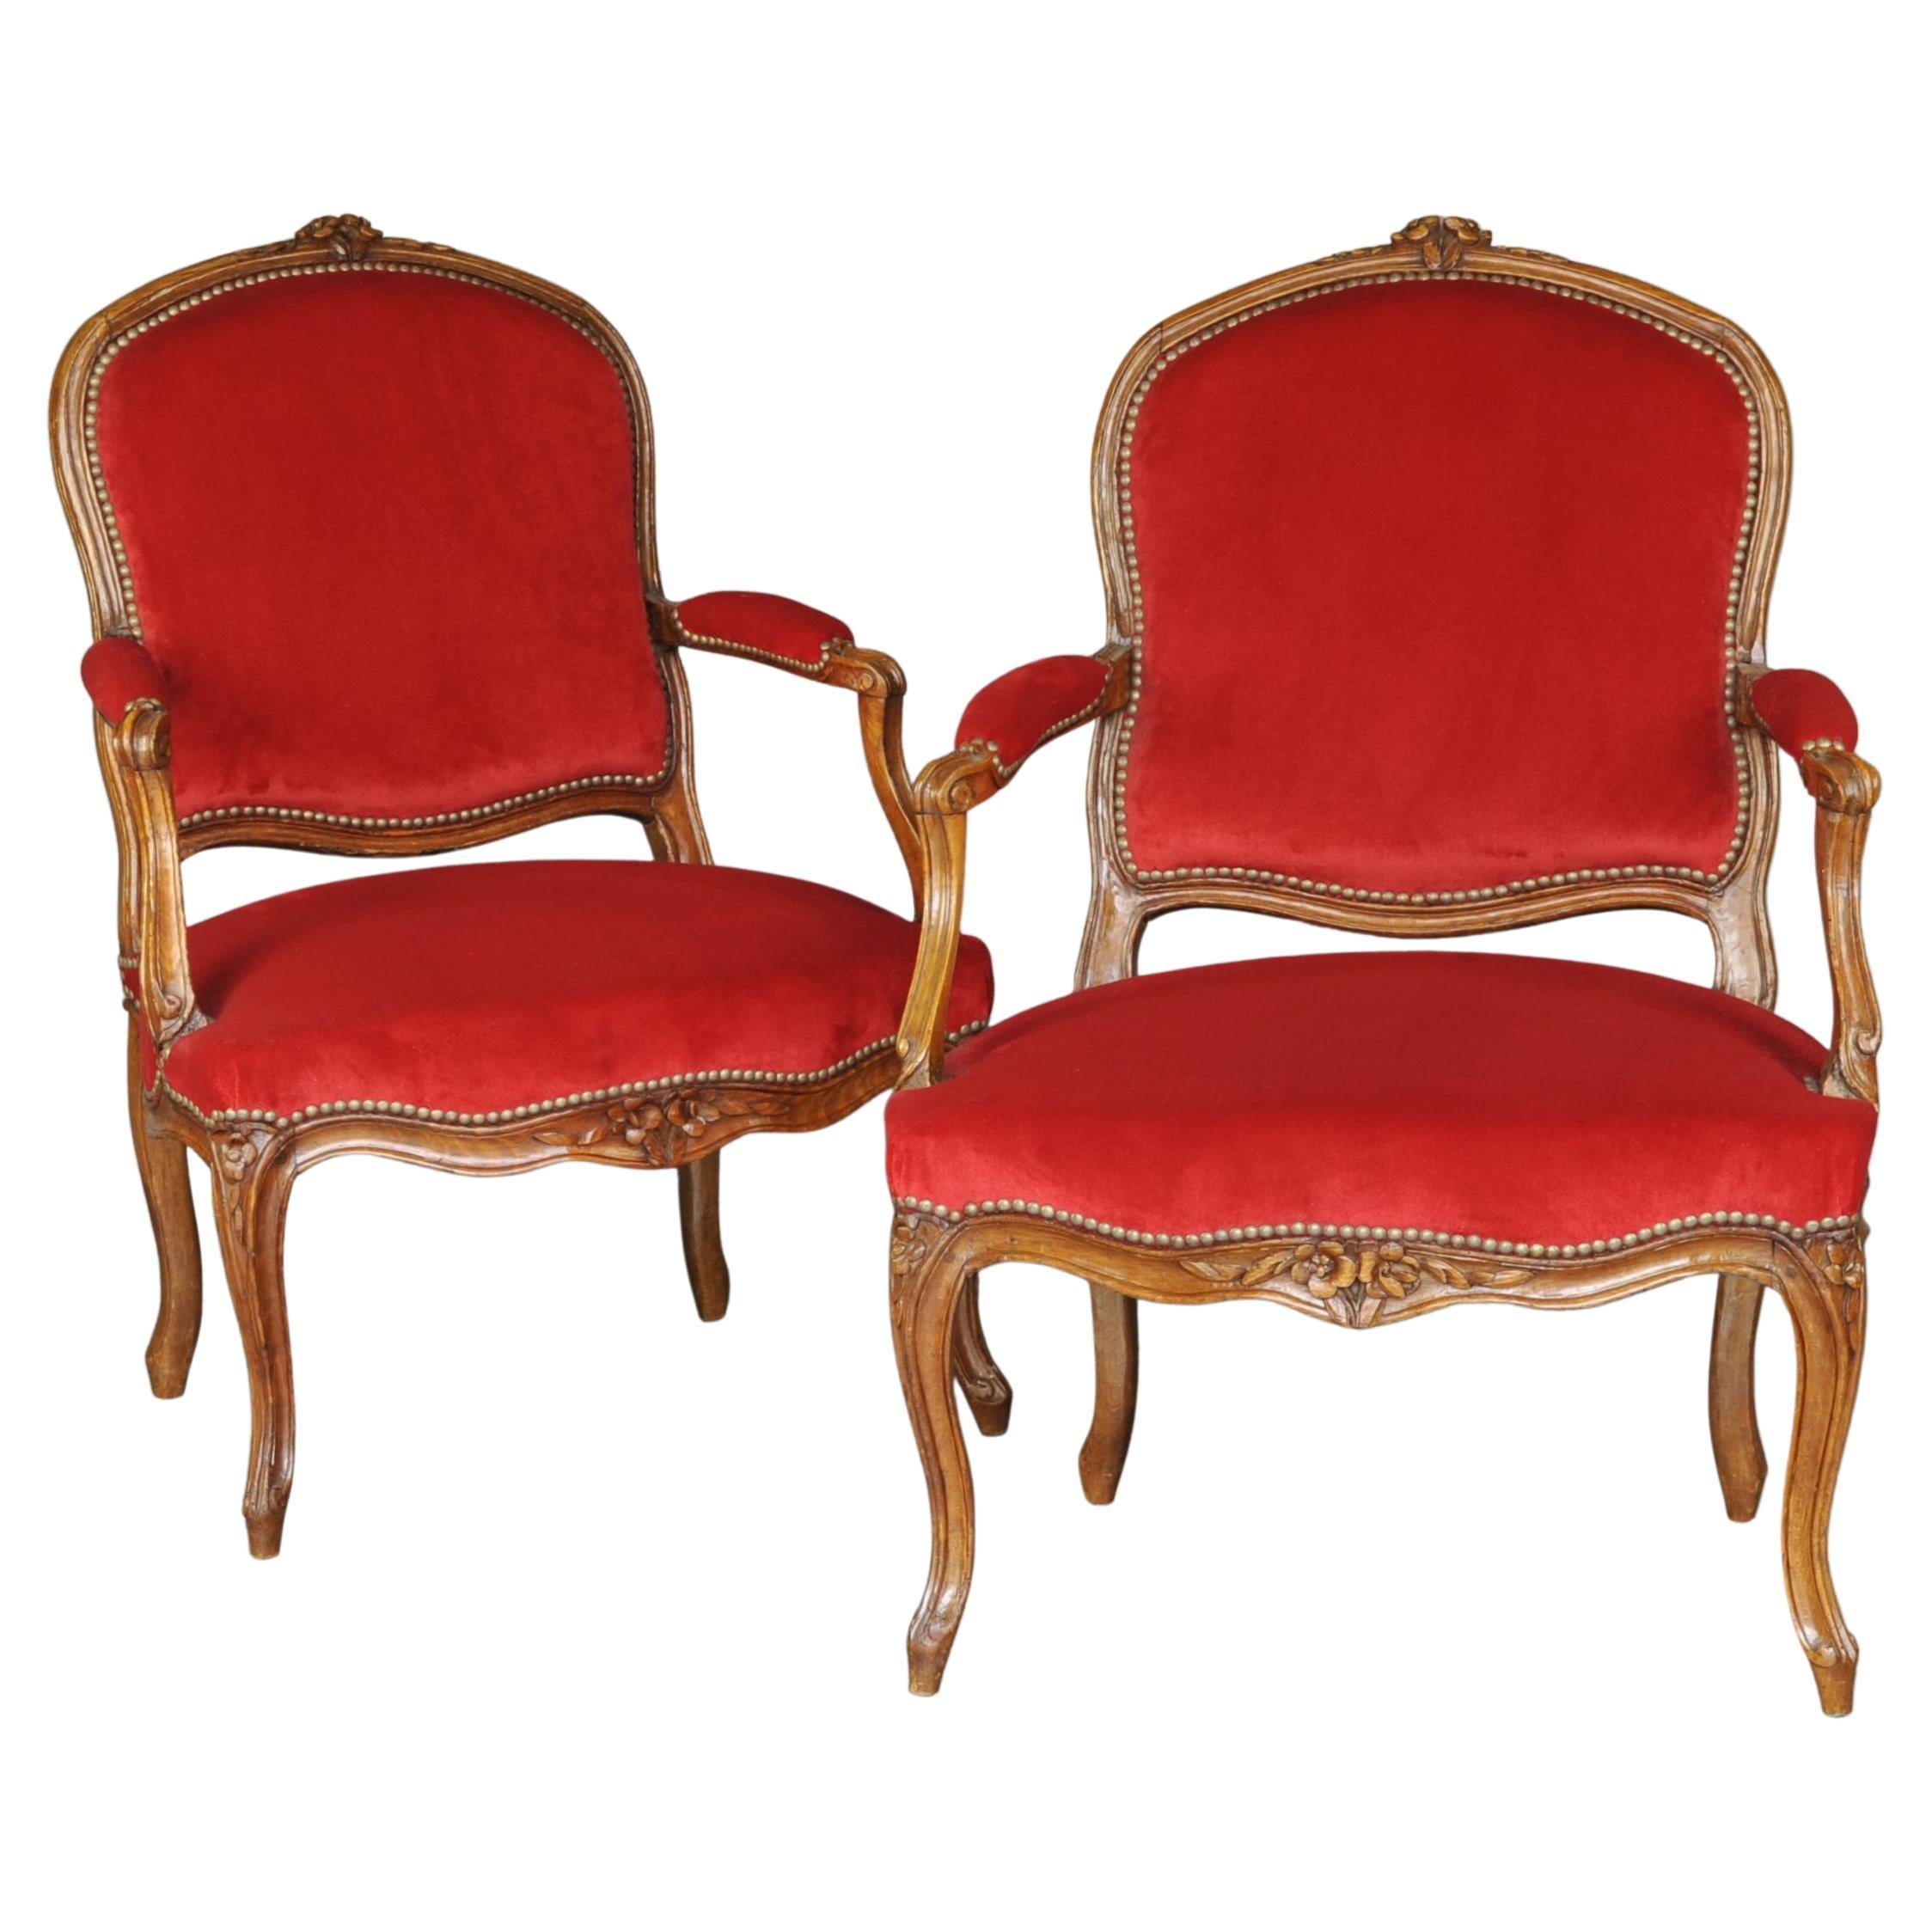 Paire de grands fauteuils Louis XV - 18ème siècle